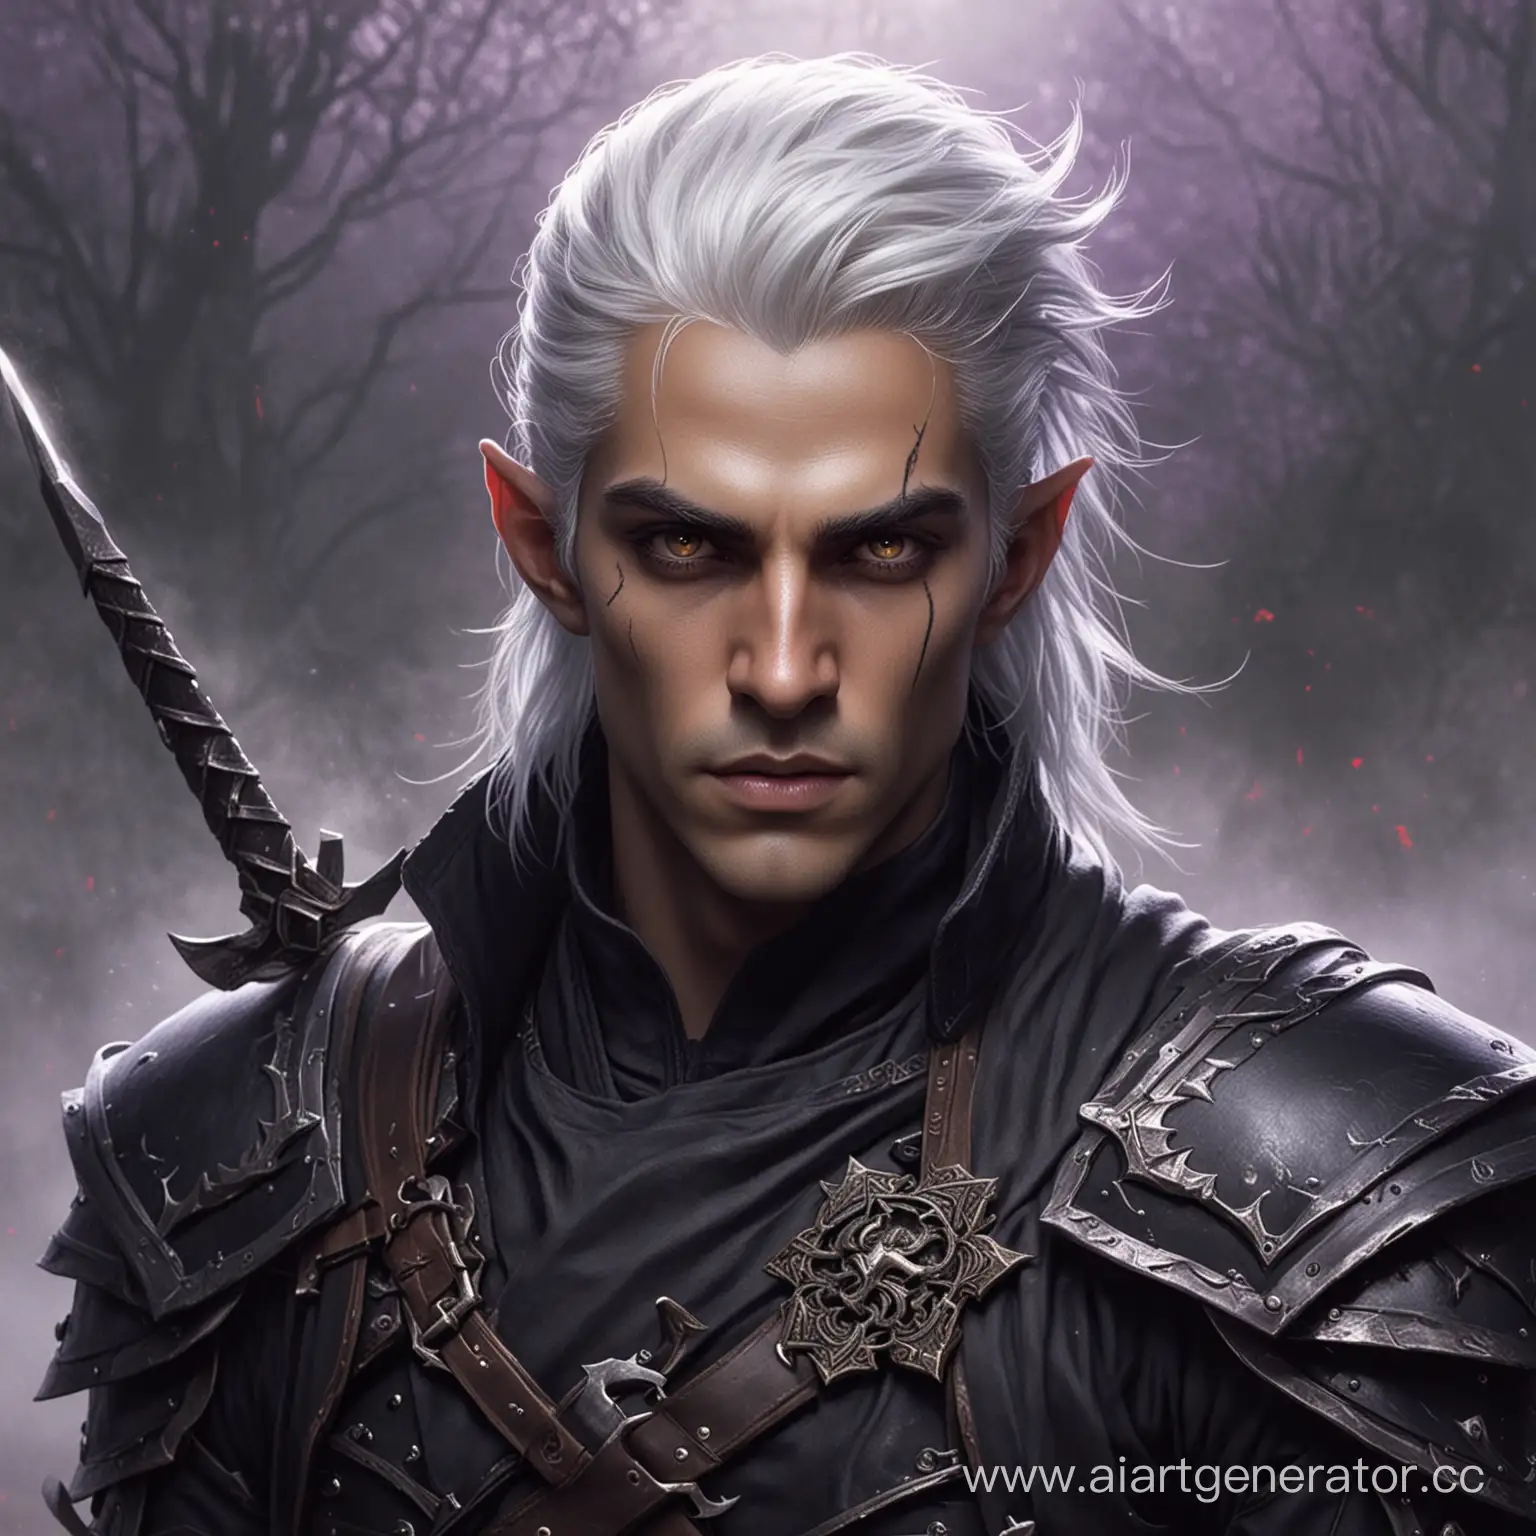 Темный эльф, мужчина, белые волосы, карие глаза, острые черты лица, черная боевая одежда, фиолетовые кинжалы из тумана, темная кожа